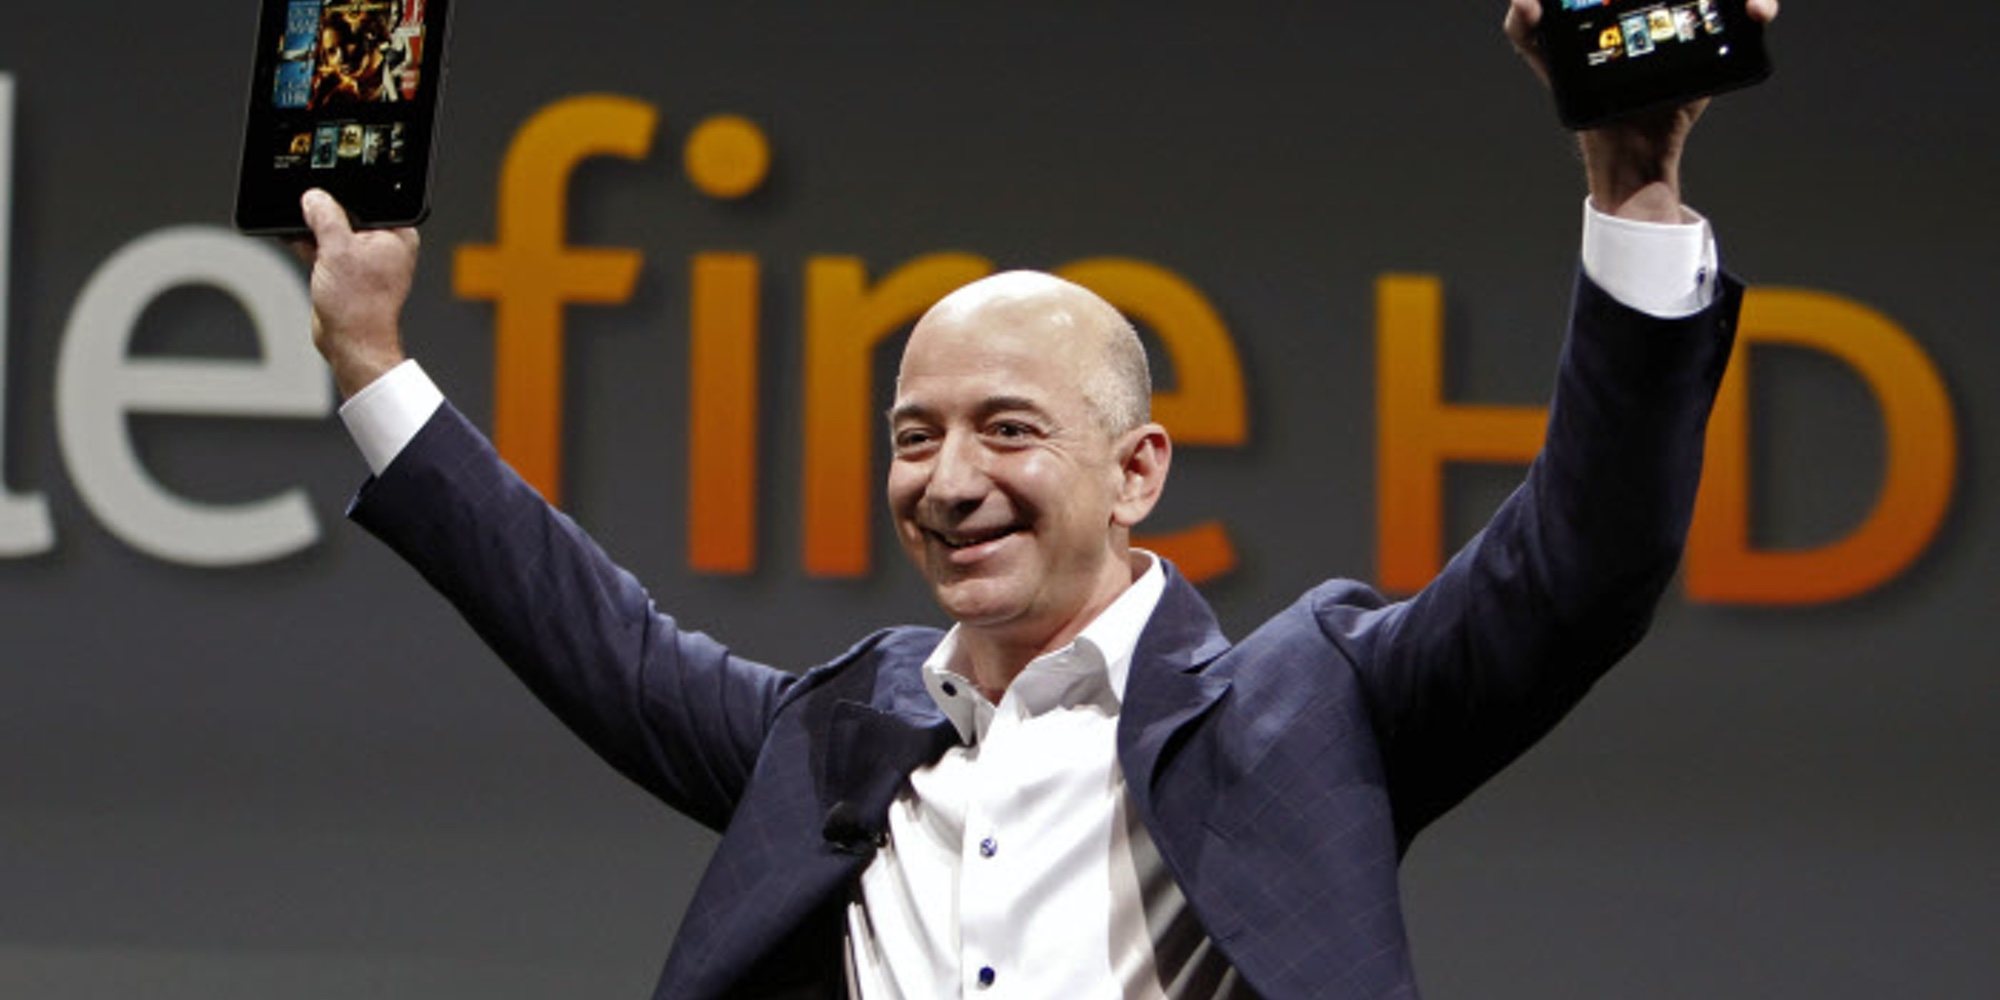 Jeff Bezos, fundador de Amazon, anuncia su divorcio de MacKenzie Bezos tras 25 años casados